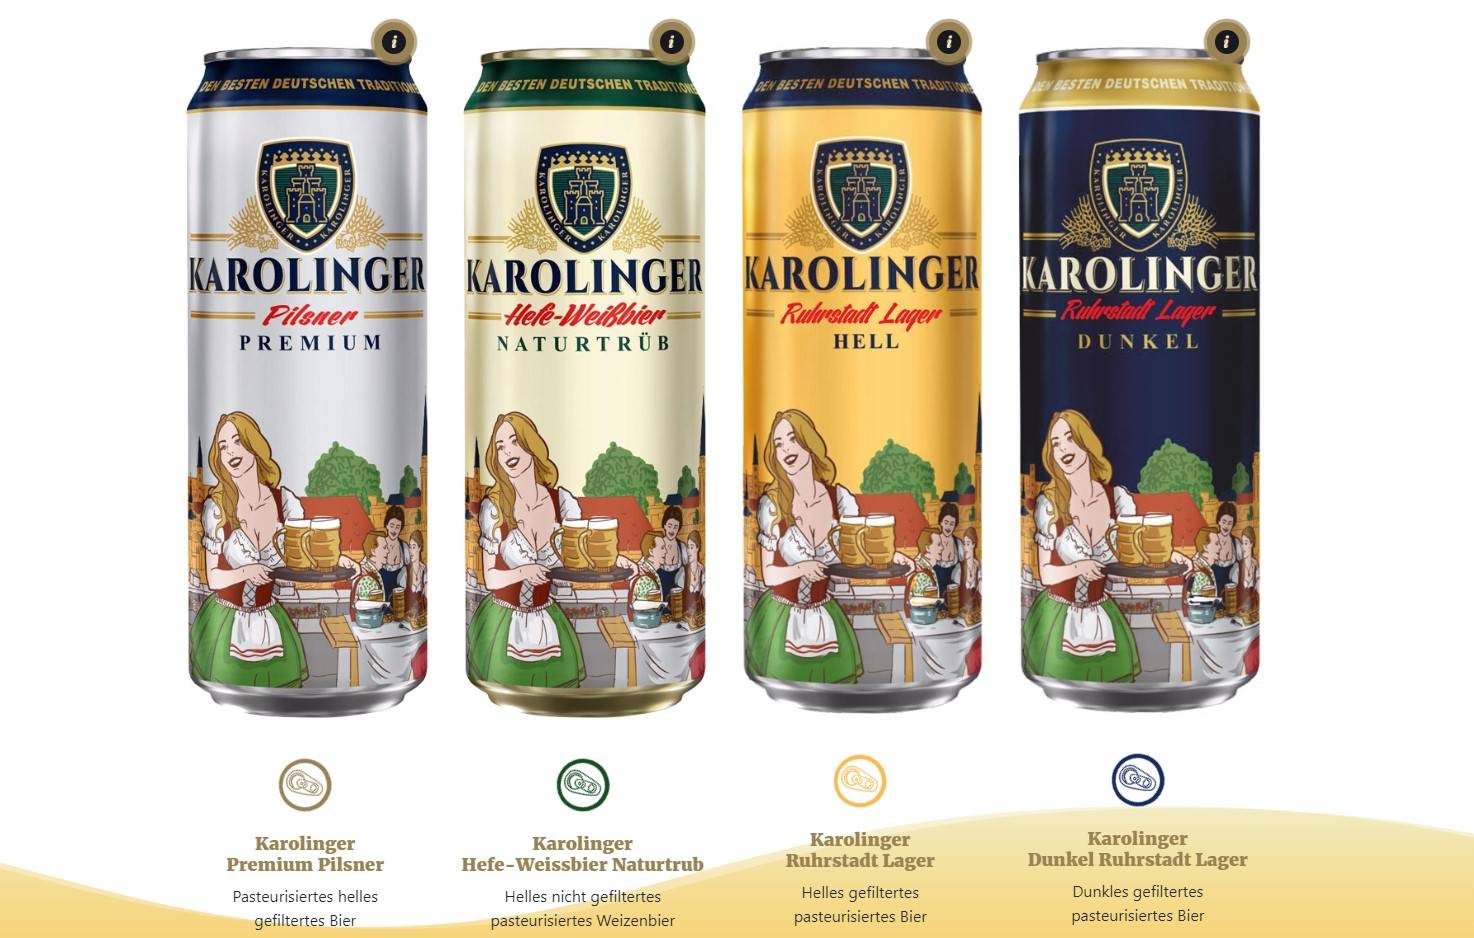 Landing page for Karolinger brand